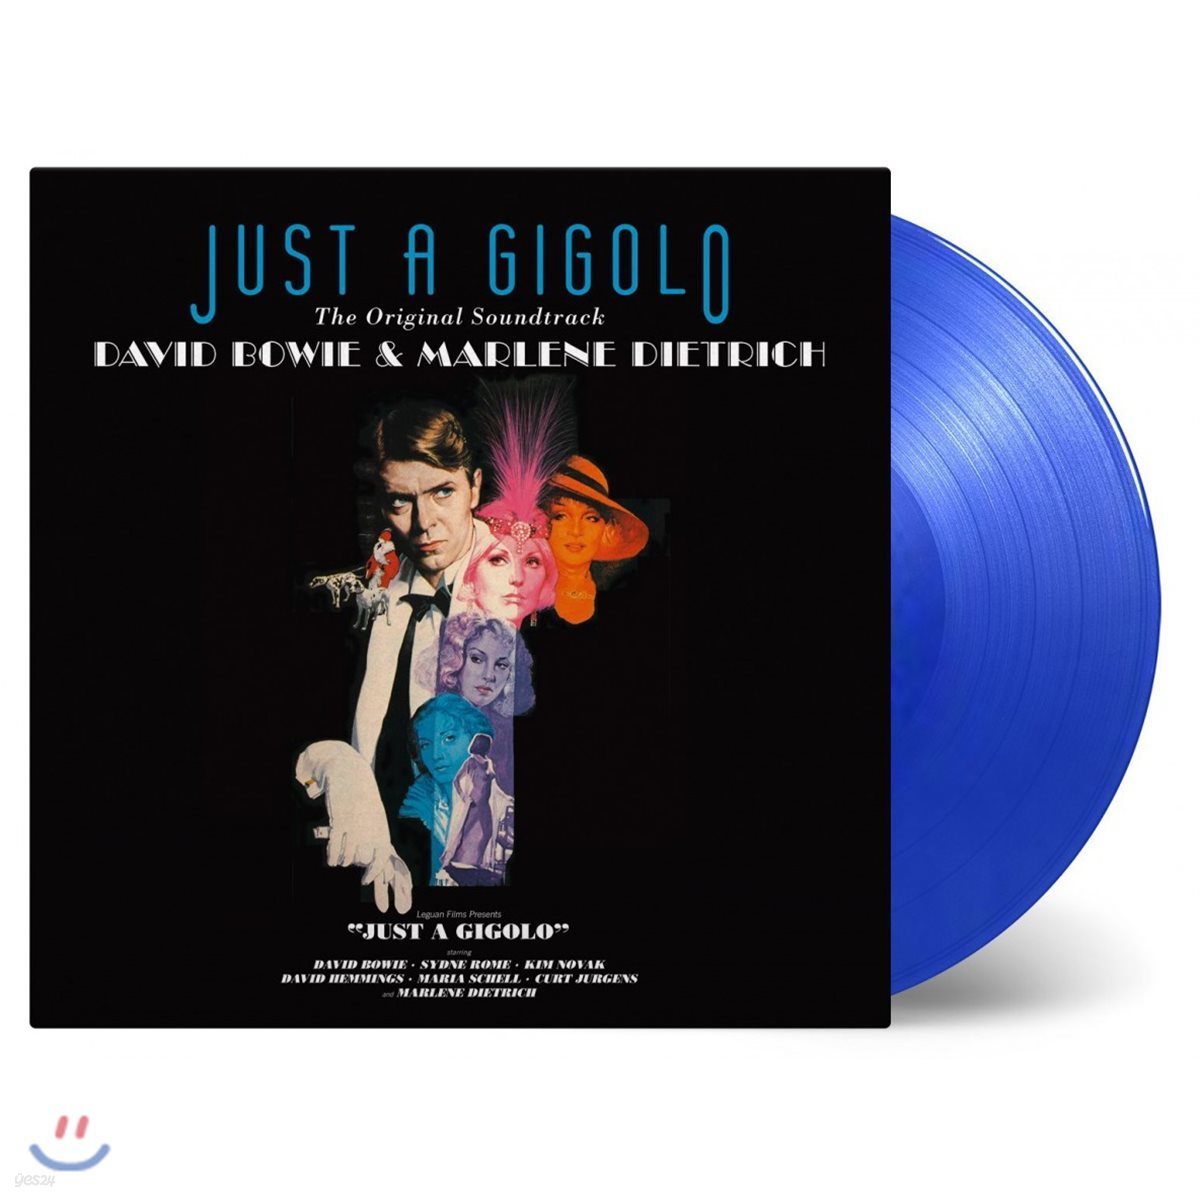 저스트 어 지골로 영화음악 (Just A Gigolo OST by David Bowie &amp; Marlene Dietrich) [투명 블루 컬러 LP]